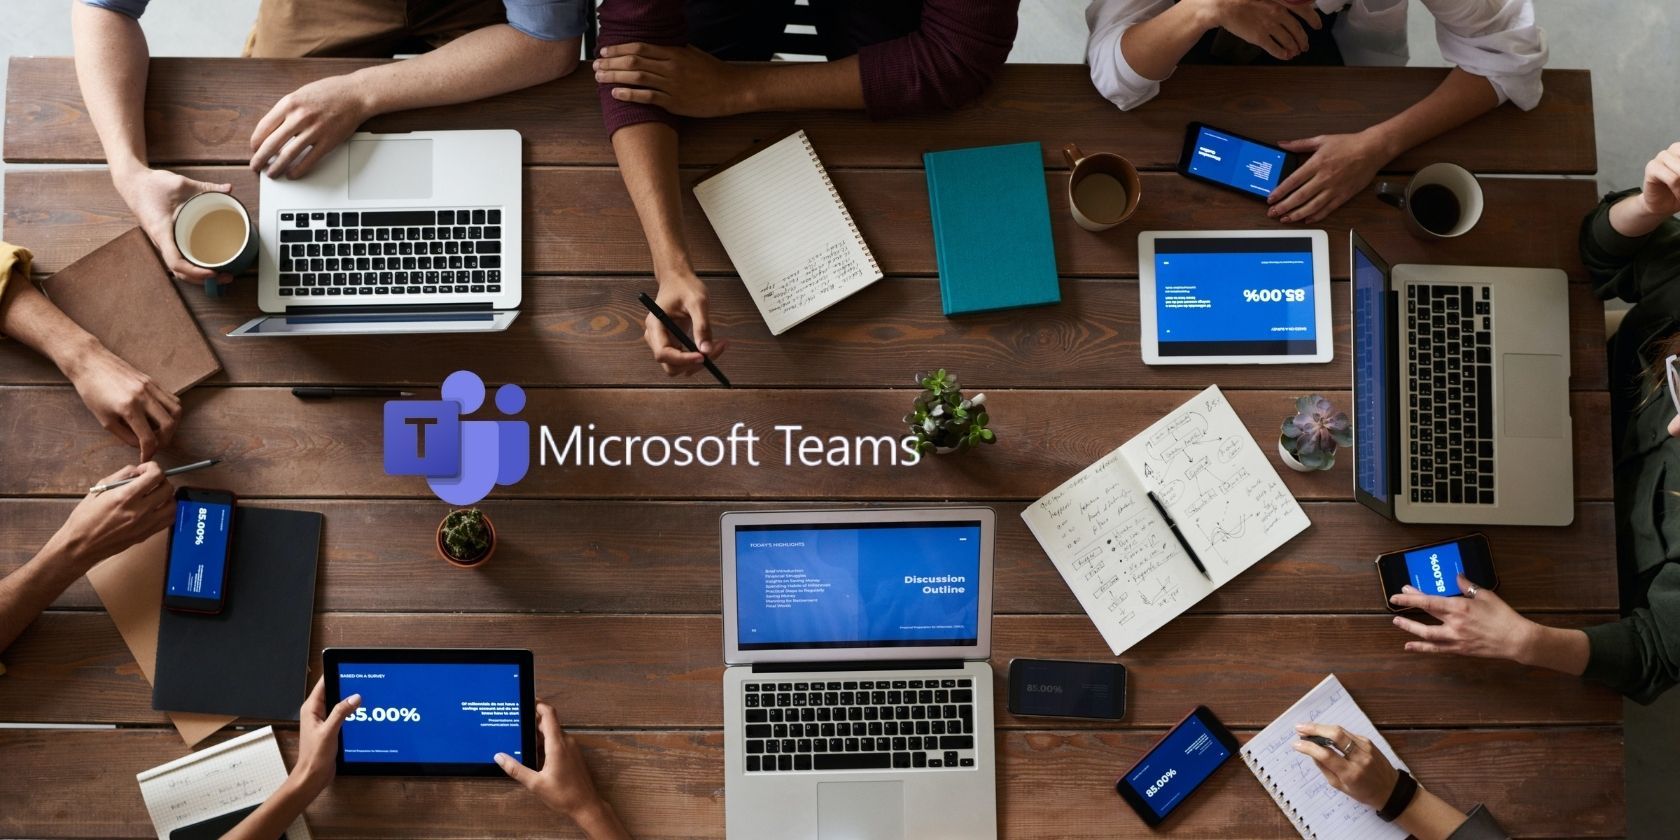 Microsoft Teams meeting